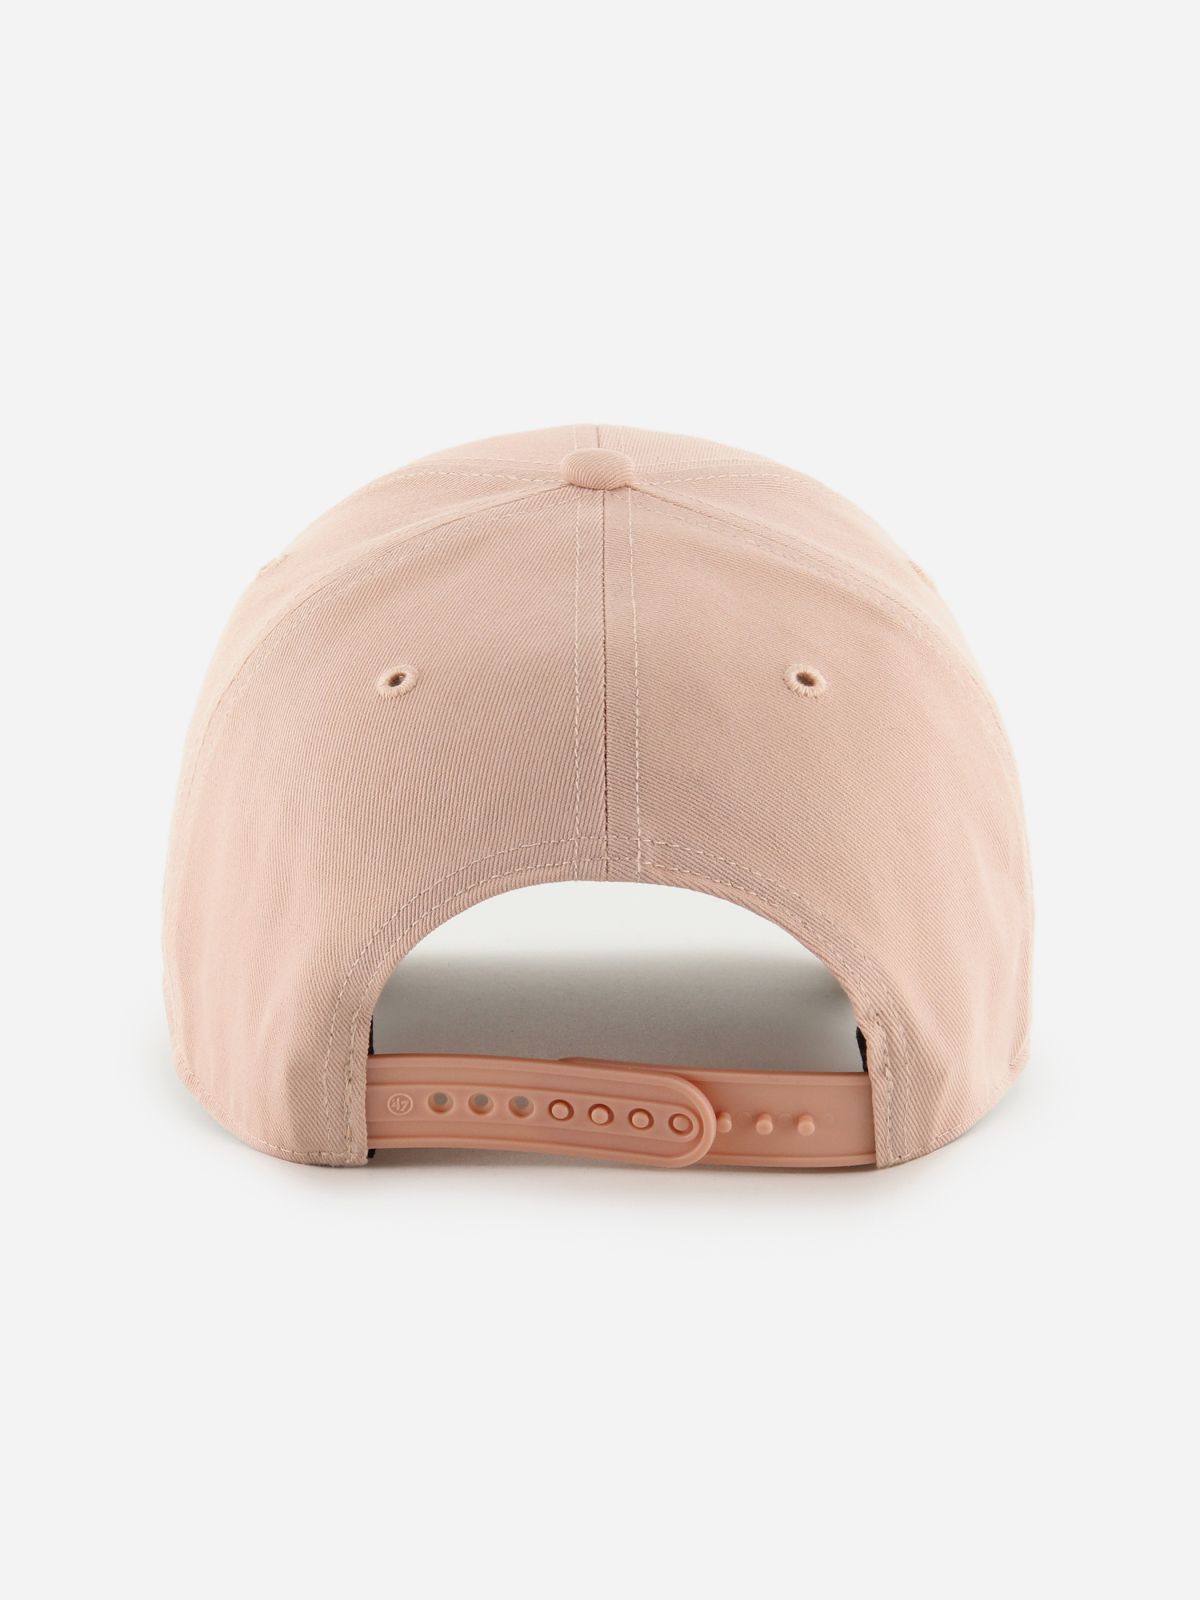  כובע מצחייה עם לוגו רקום / נשים של BRAND 47